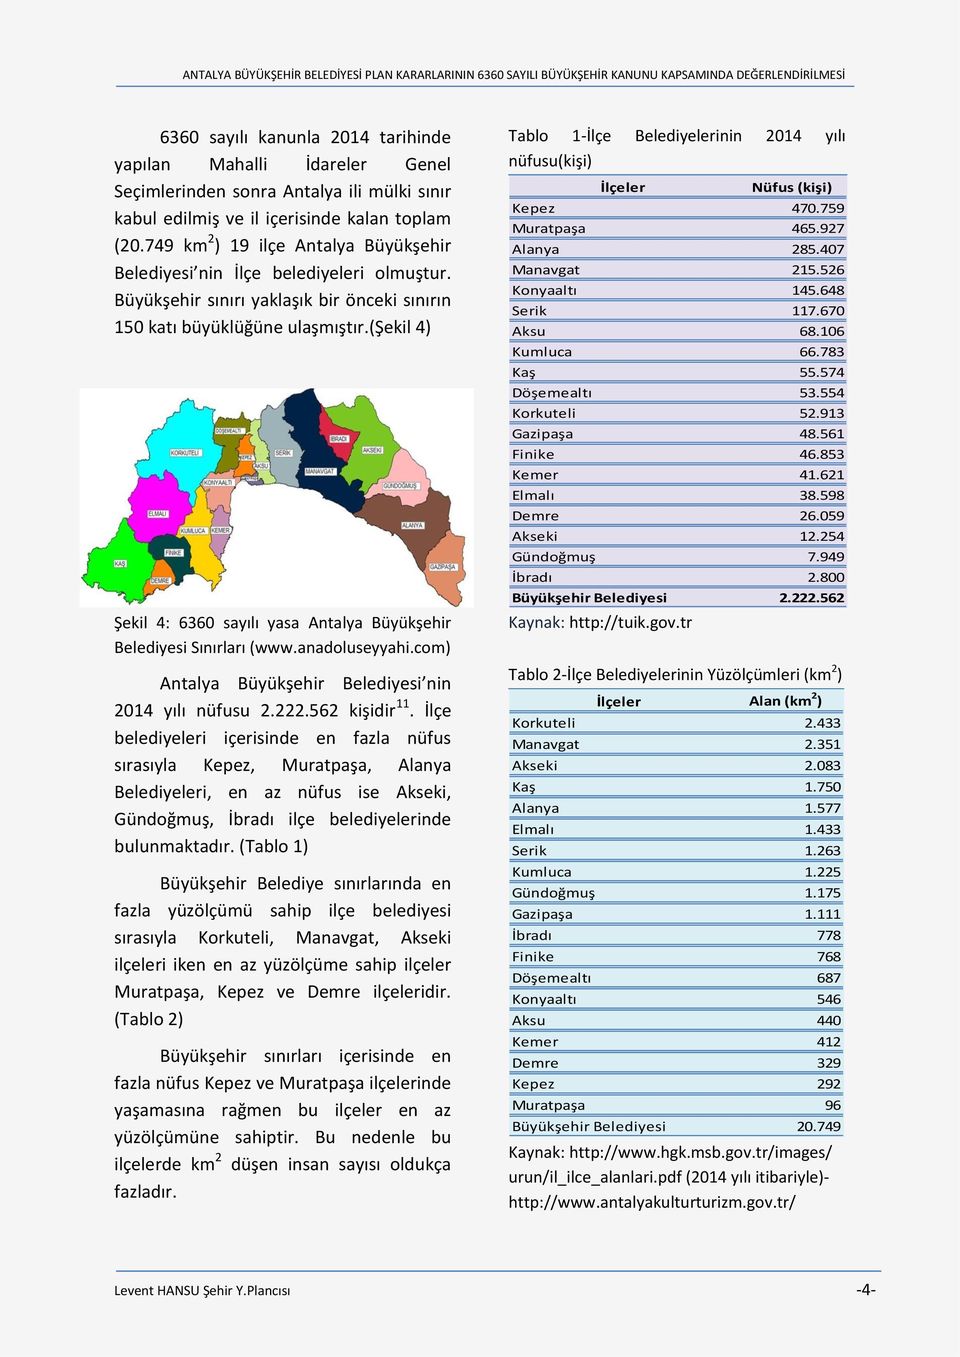 (şekil 4) Şekil 4: 6360 sayılı yasa Antalya Büyükşehir Belediyesi Sınırları (www.anadoluseyyahi.com) Antalya Büyükşehir Belediyesi nin 2014 yılı nüfusu 2.222.562 kişidir 11.